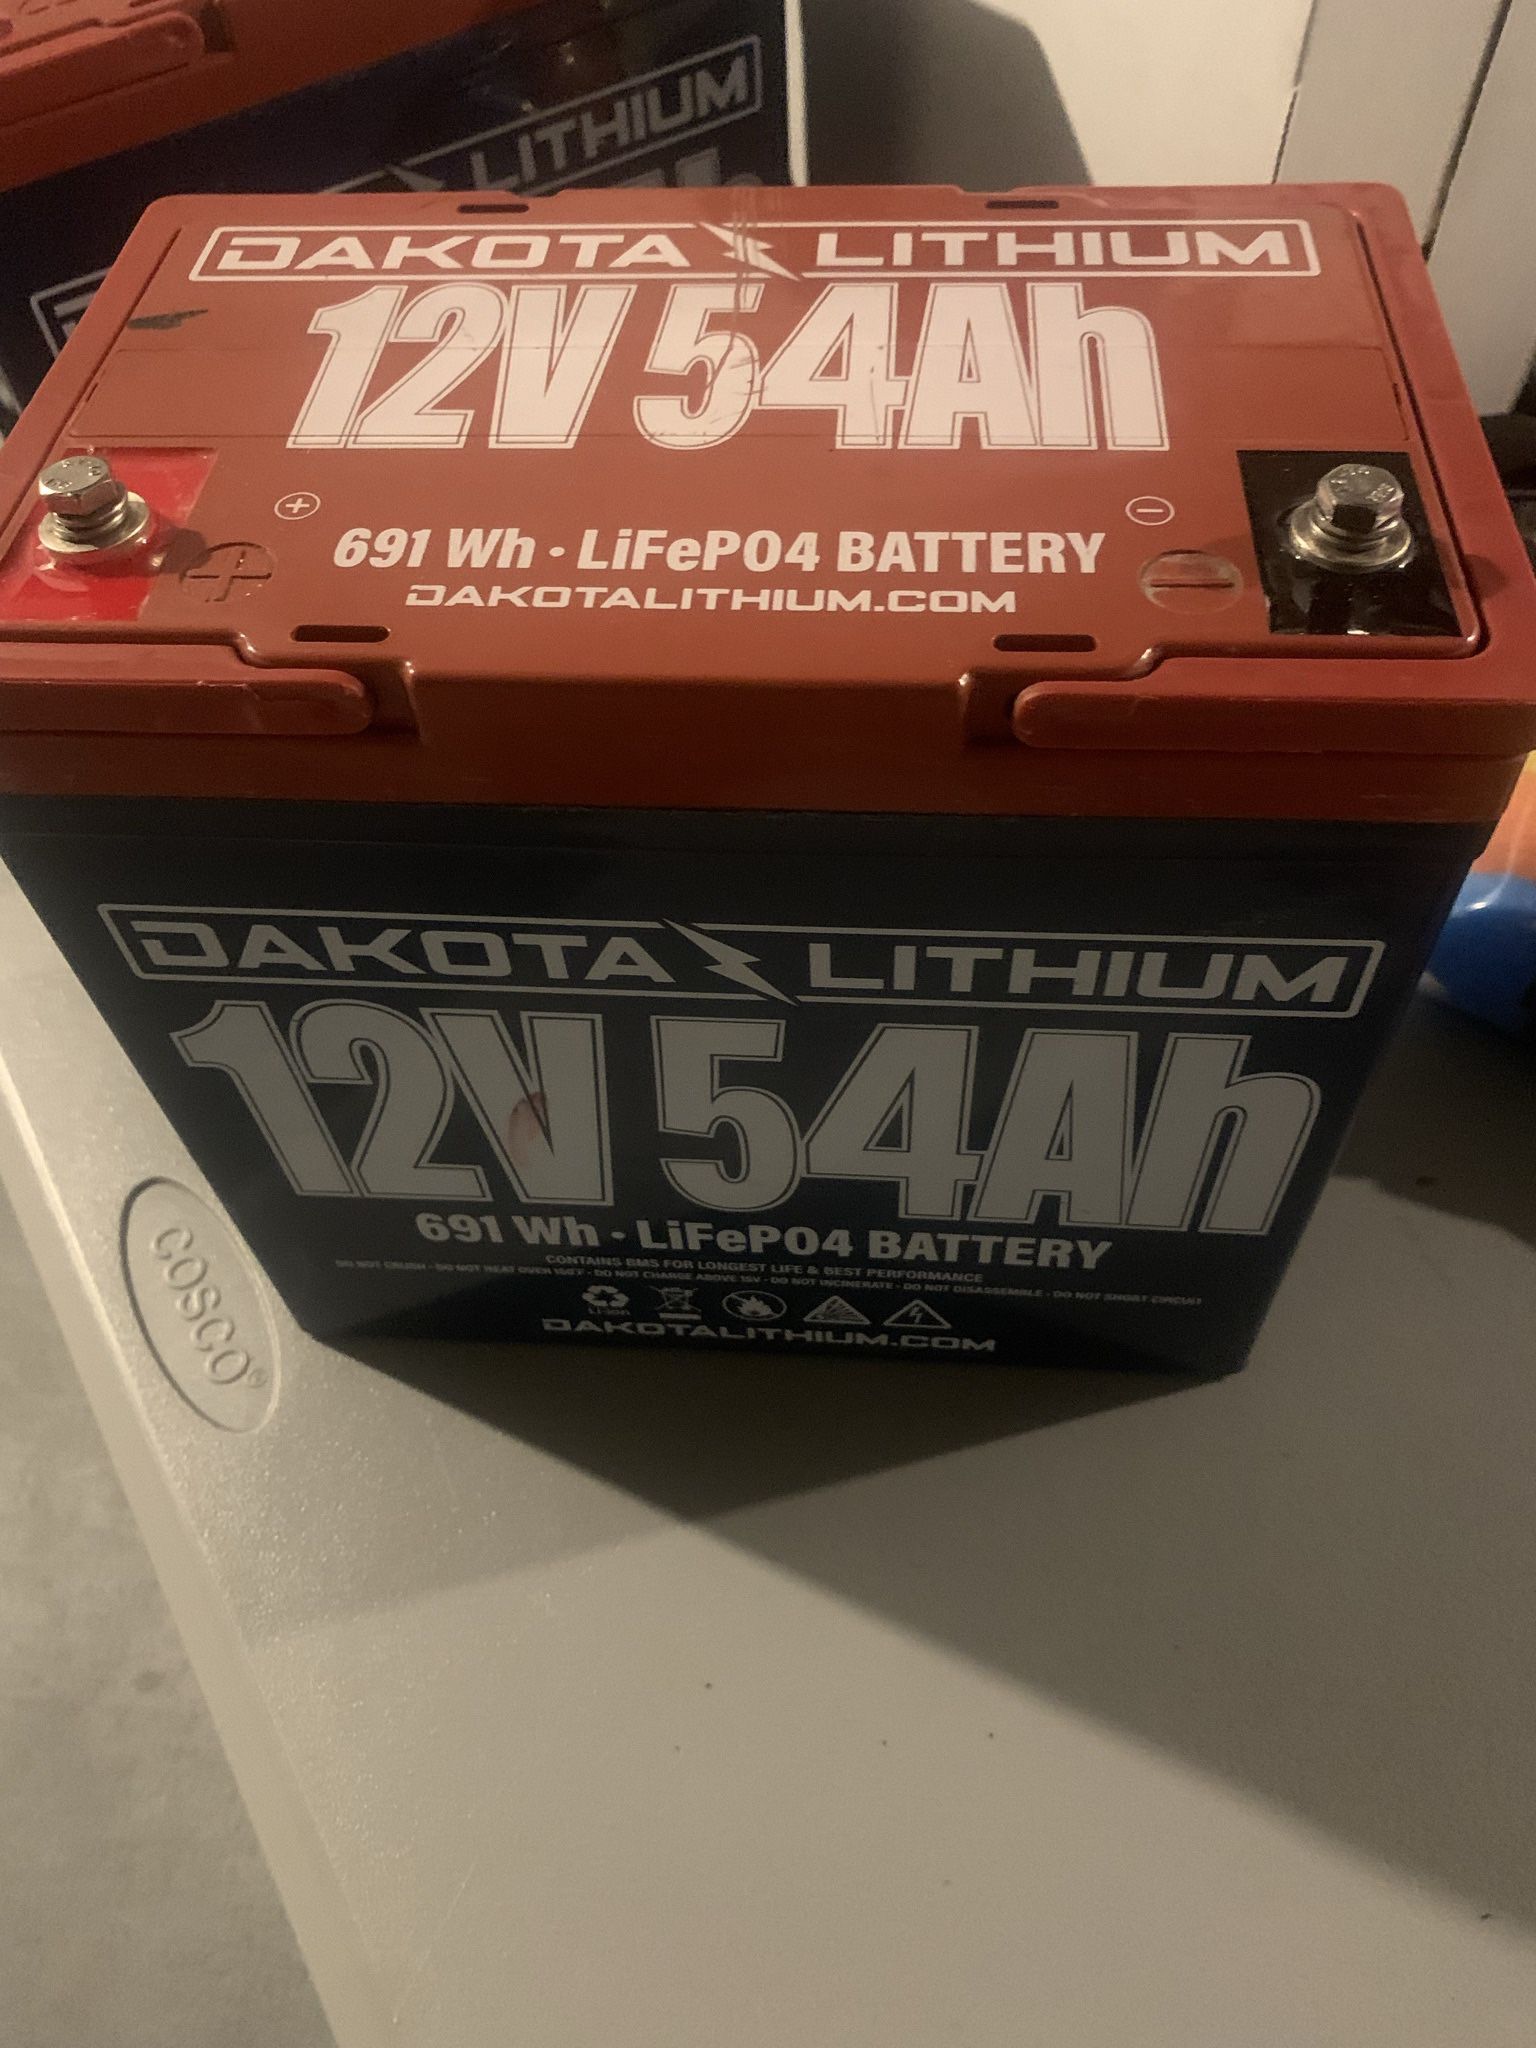 12v 54Ah DakotaLithium Battery